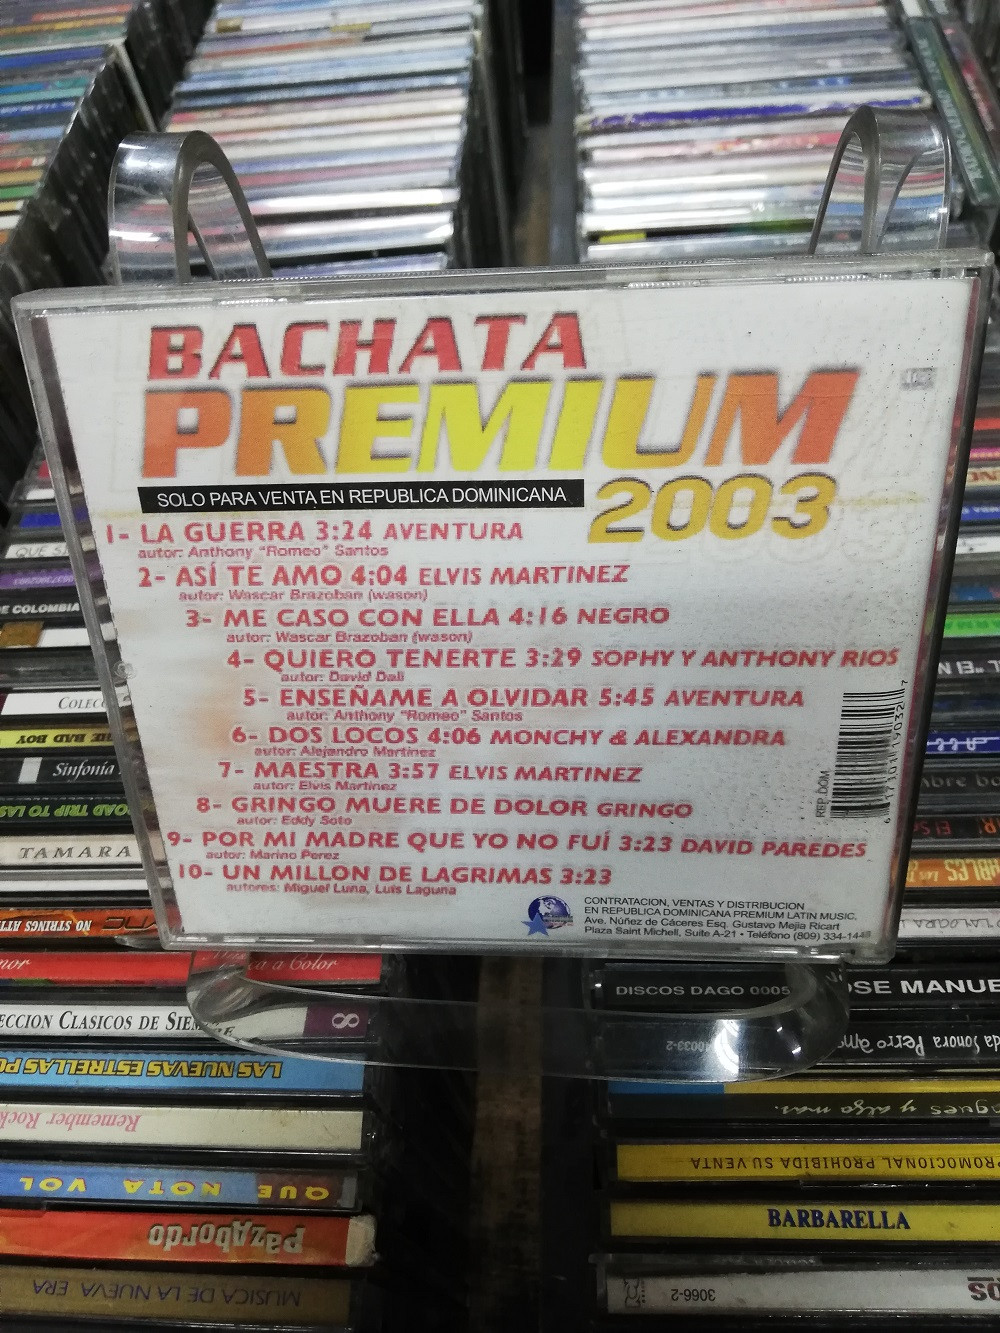 Imagen CD BACHATA PREMIUM 2003 2